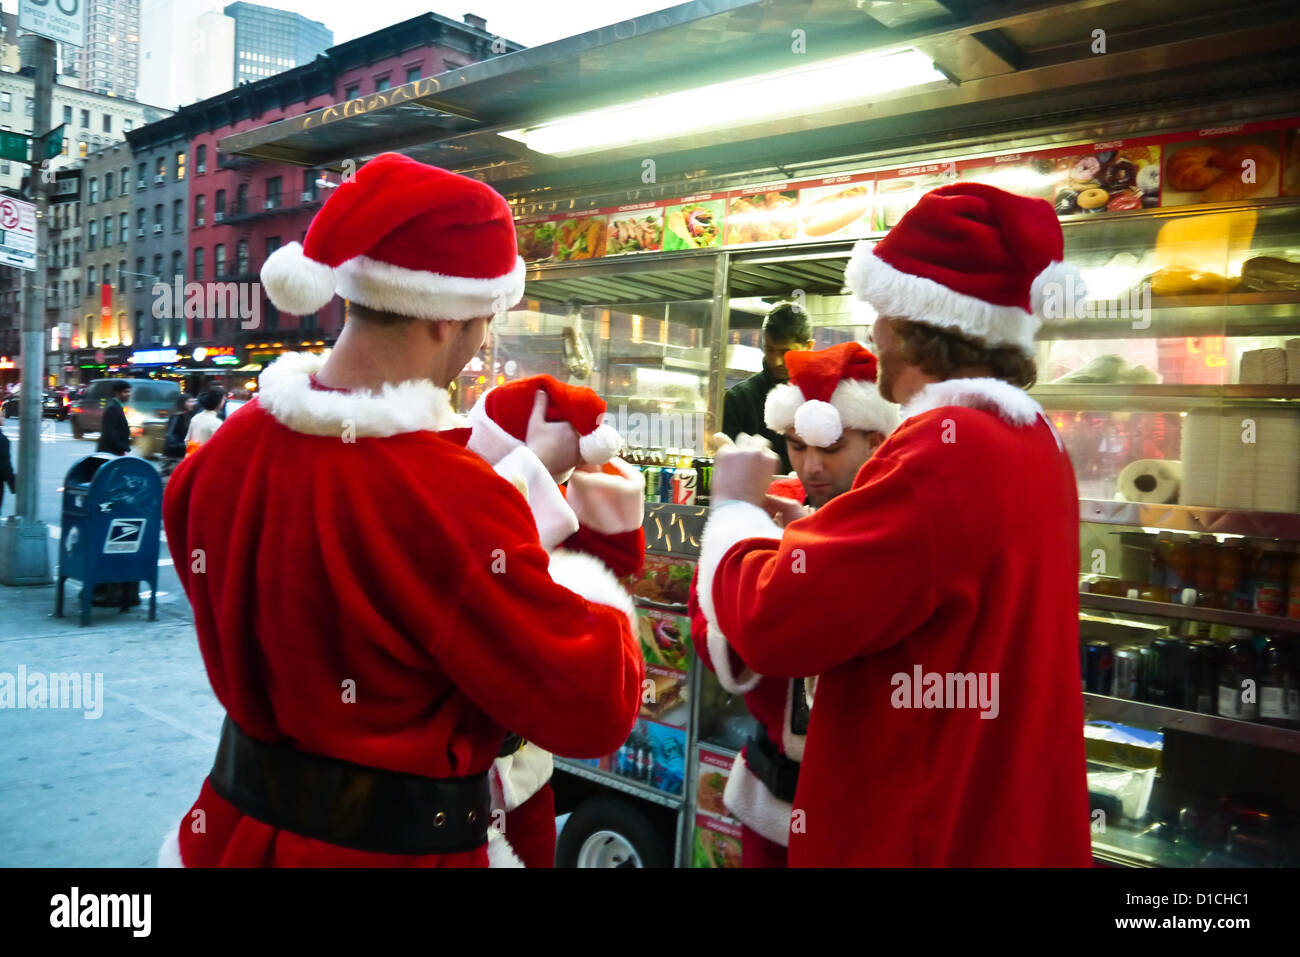 NEW YORK, NY - 15 dicembre: buontemponi vestiti da Babbo Natale da ordinare a un cibo carrello sulla terza avenue durante l'annuale evento SantaCon Dicembre 15, 2012 in New York City. (Foto di Donald Bowers) Foto Stock